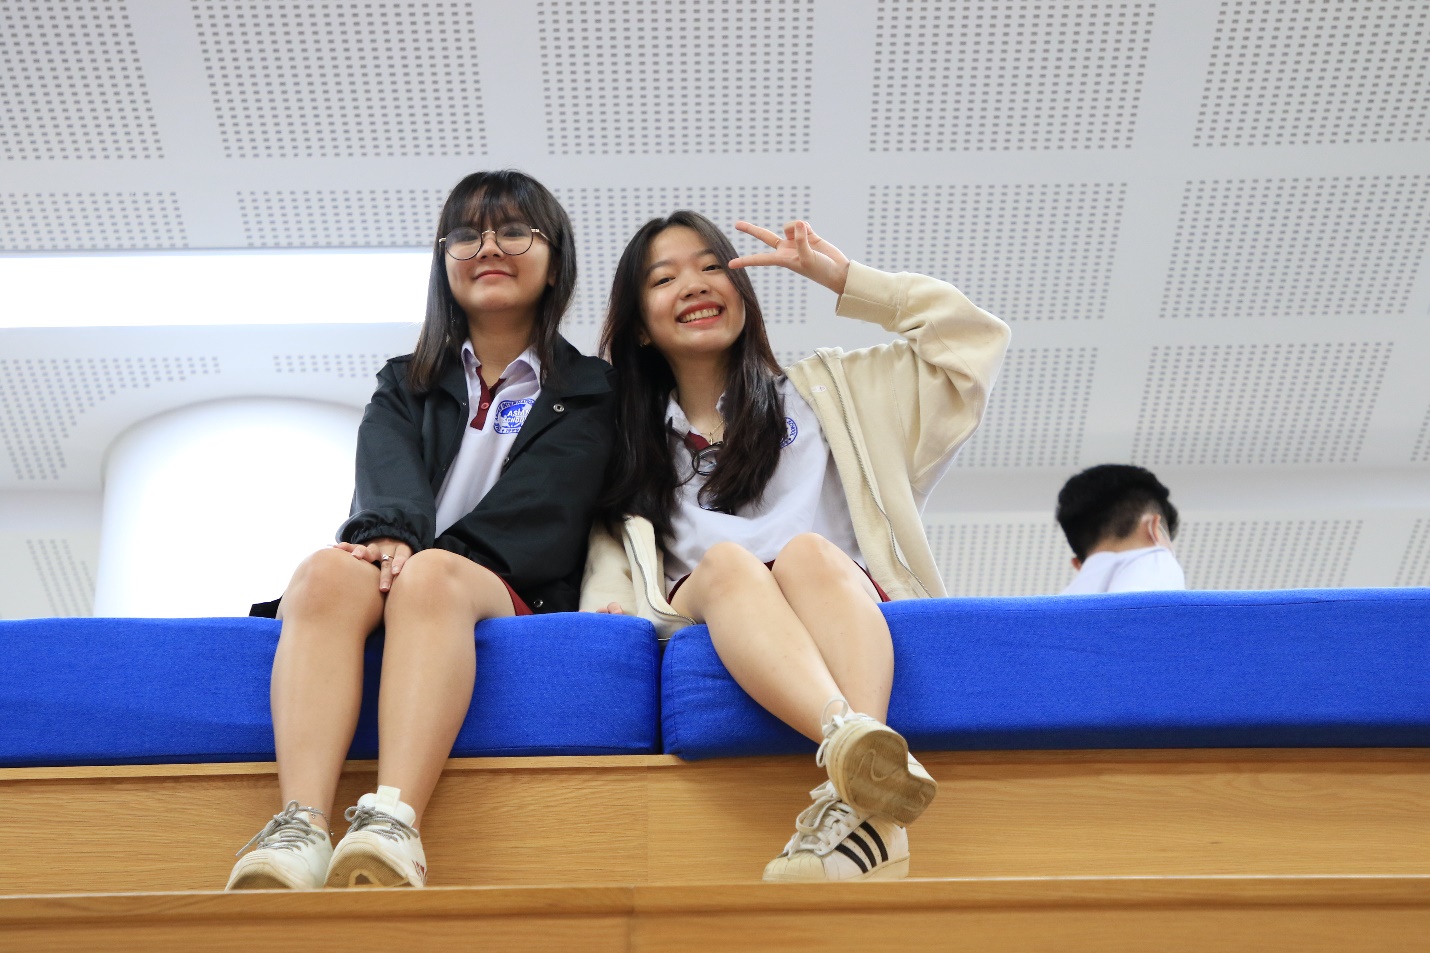 Học sinh Asian School được doanh nghiệp trang bị kiến thức ngành nghề tại SIU Open Day 2021